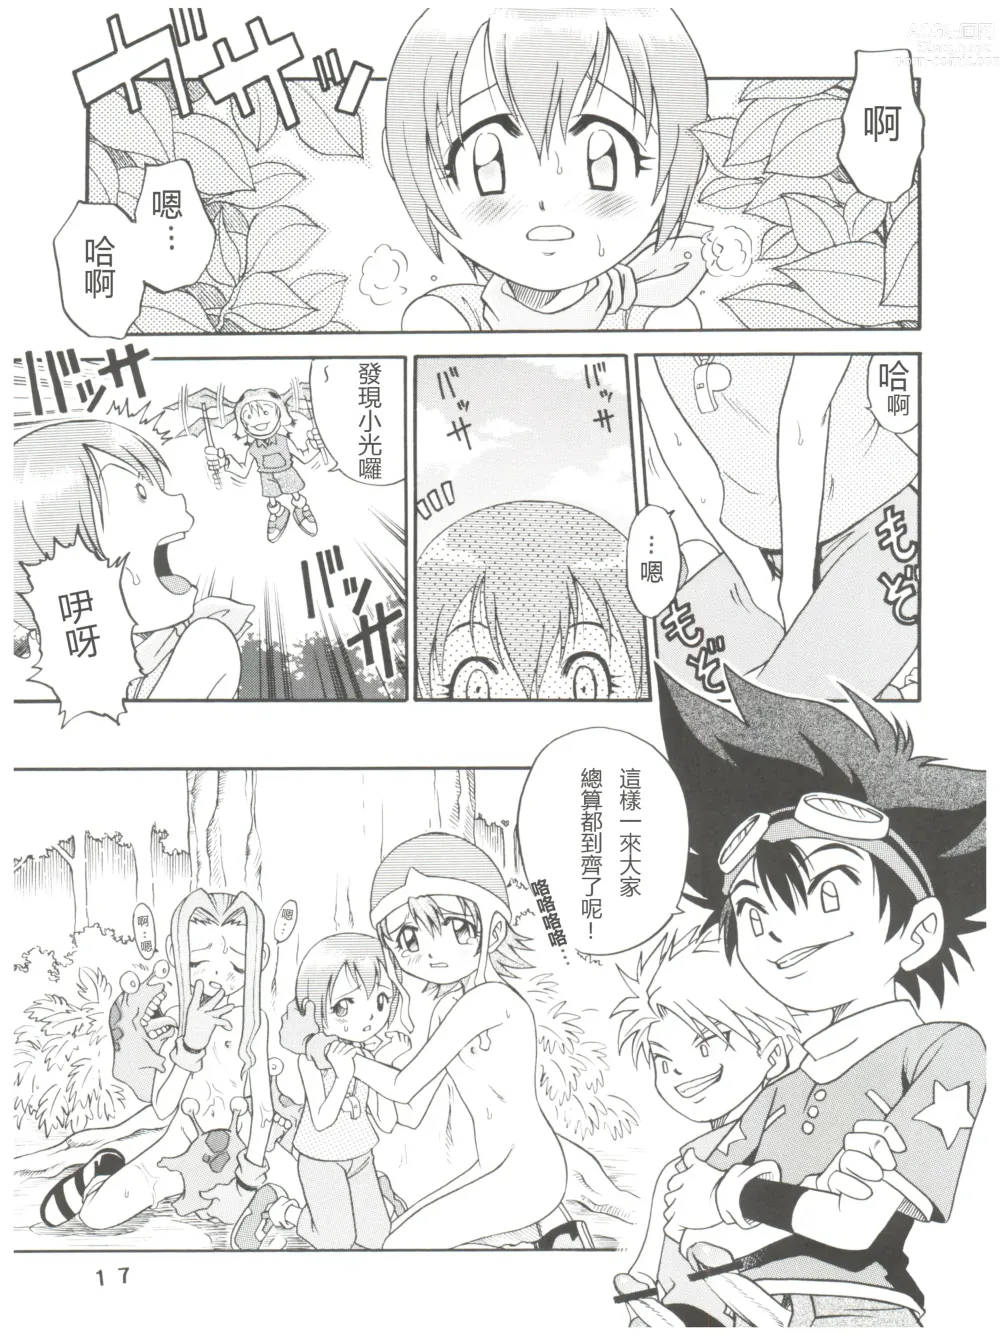 Page 17 of doujinshi Pichuu Pikachuu Daigyakusatsu